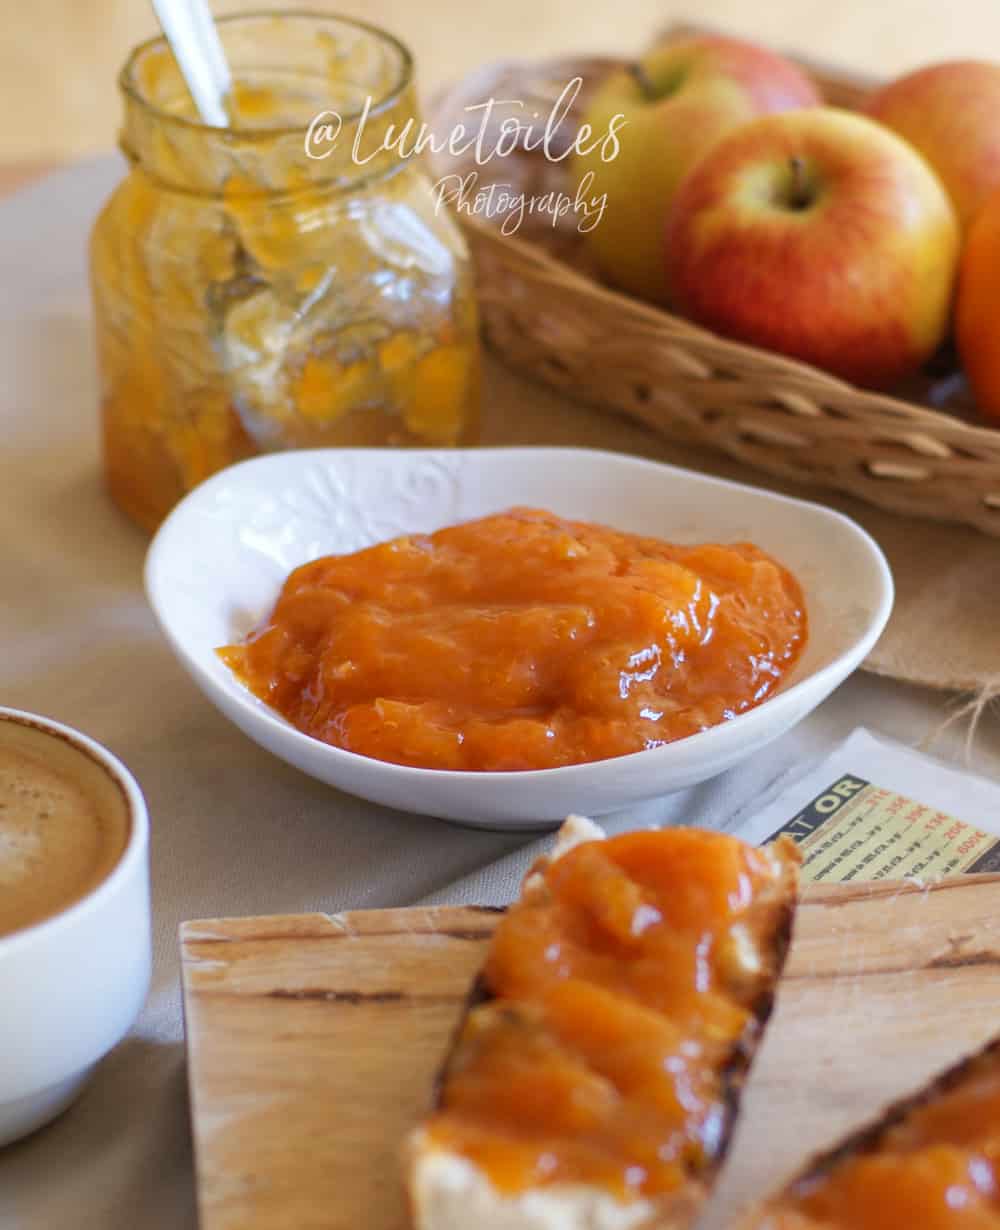 Recette confiture d'abricots à l'ancienne recette de grand-mere